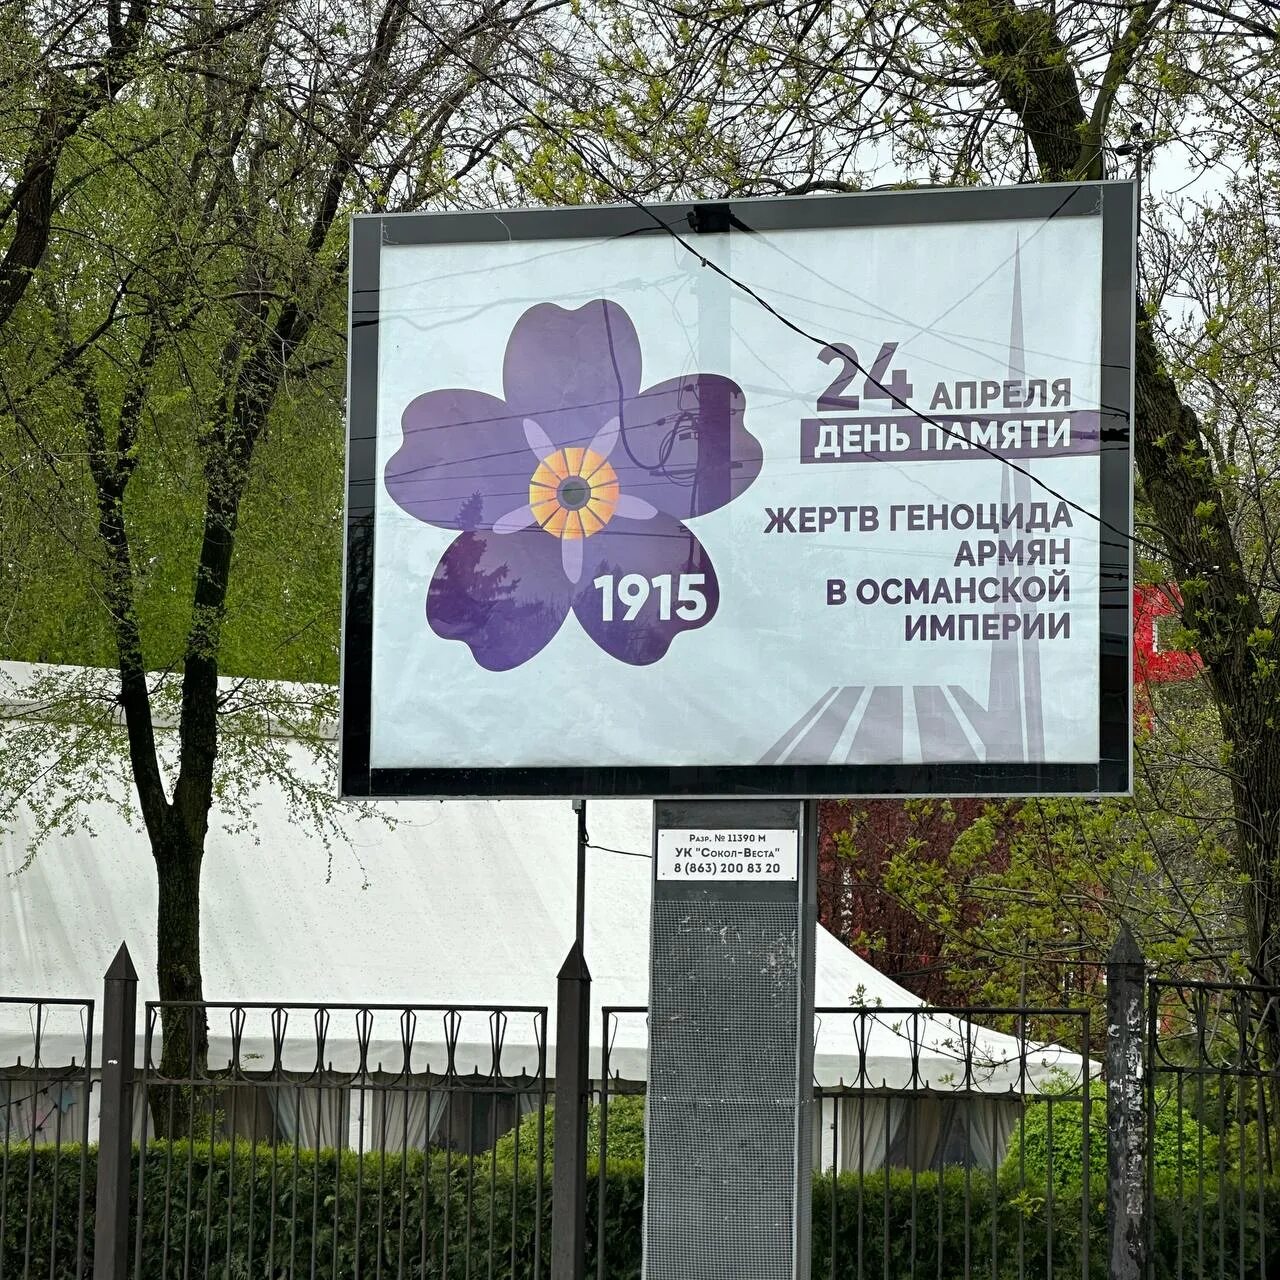 Геноцид армян память. Рекламный щит. Геноцид армян в Османской империи.